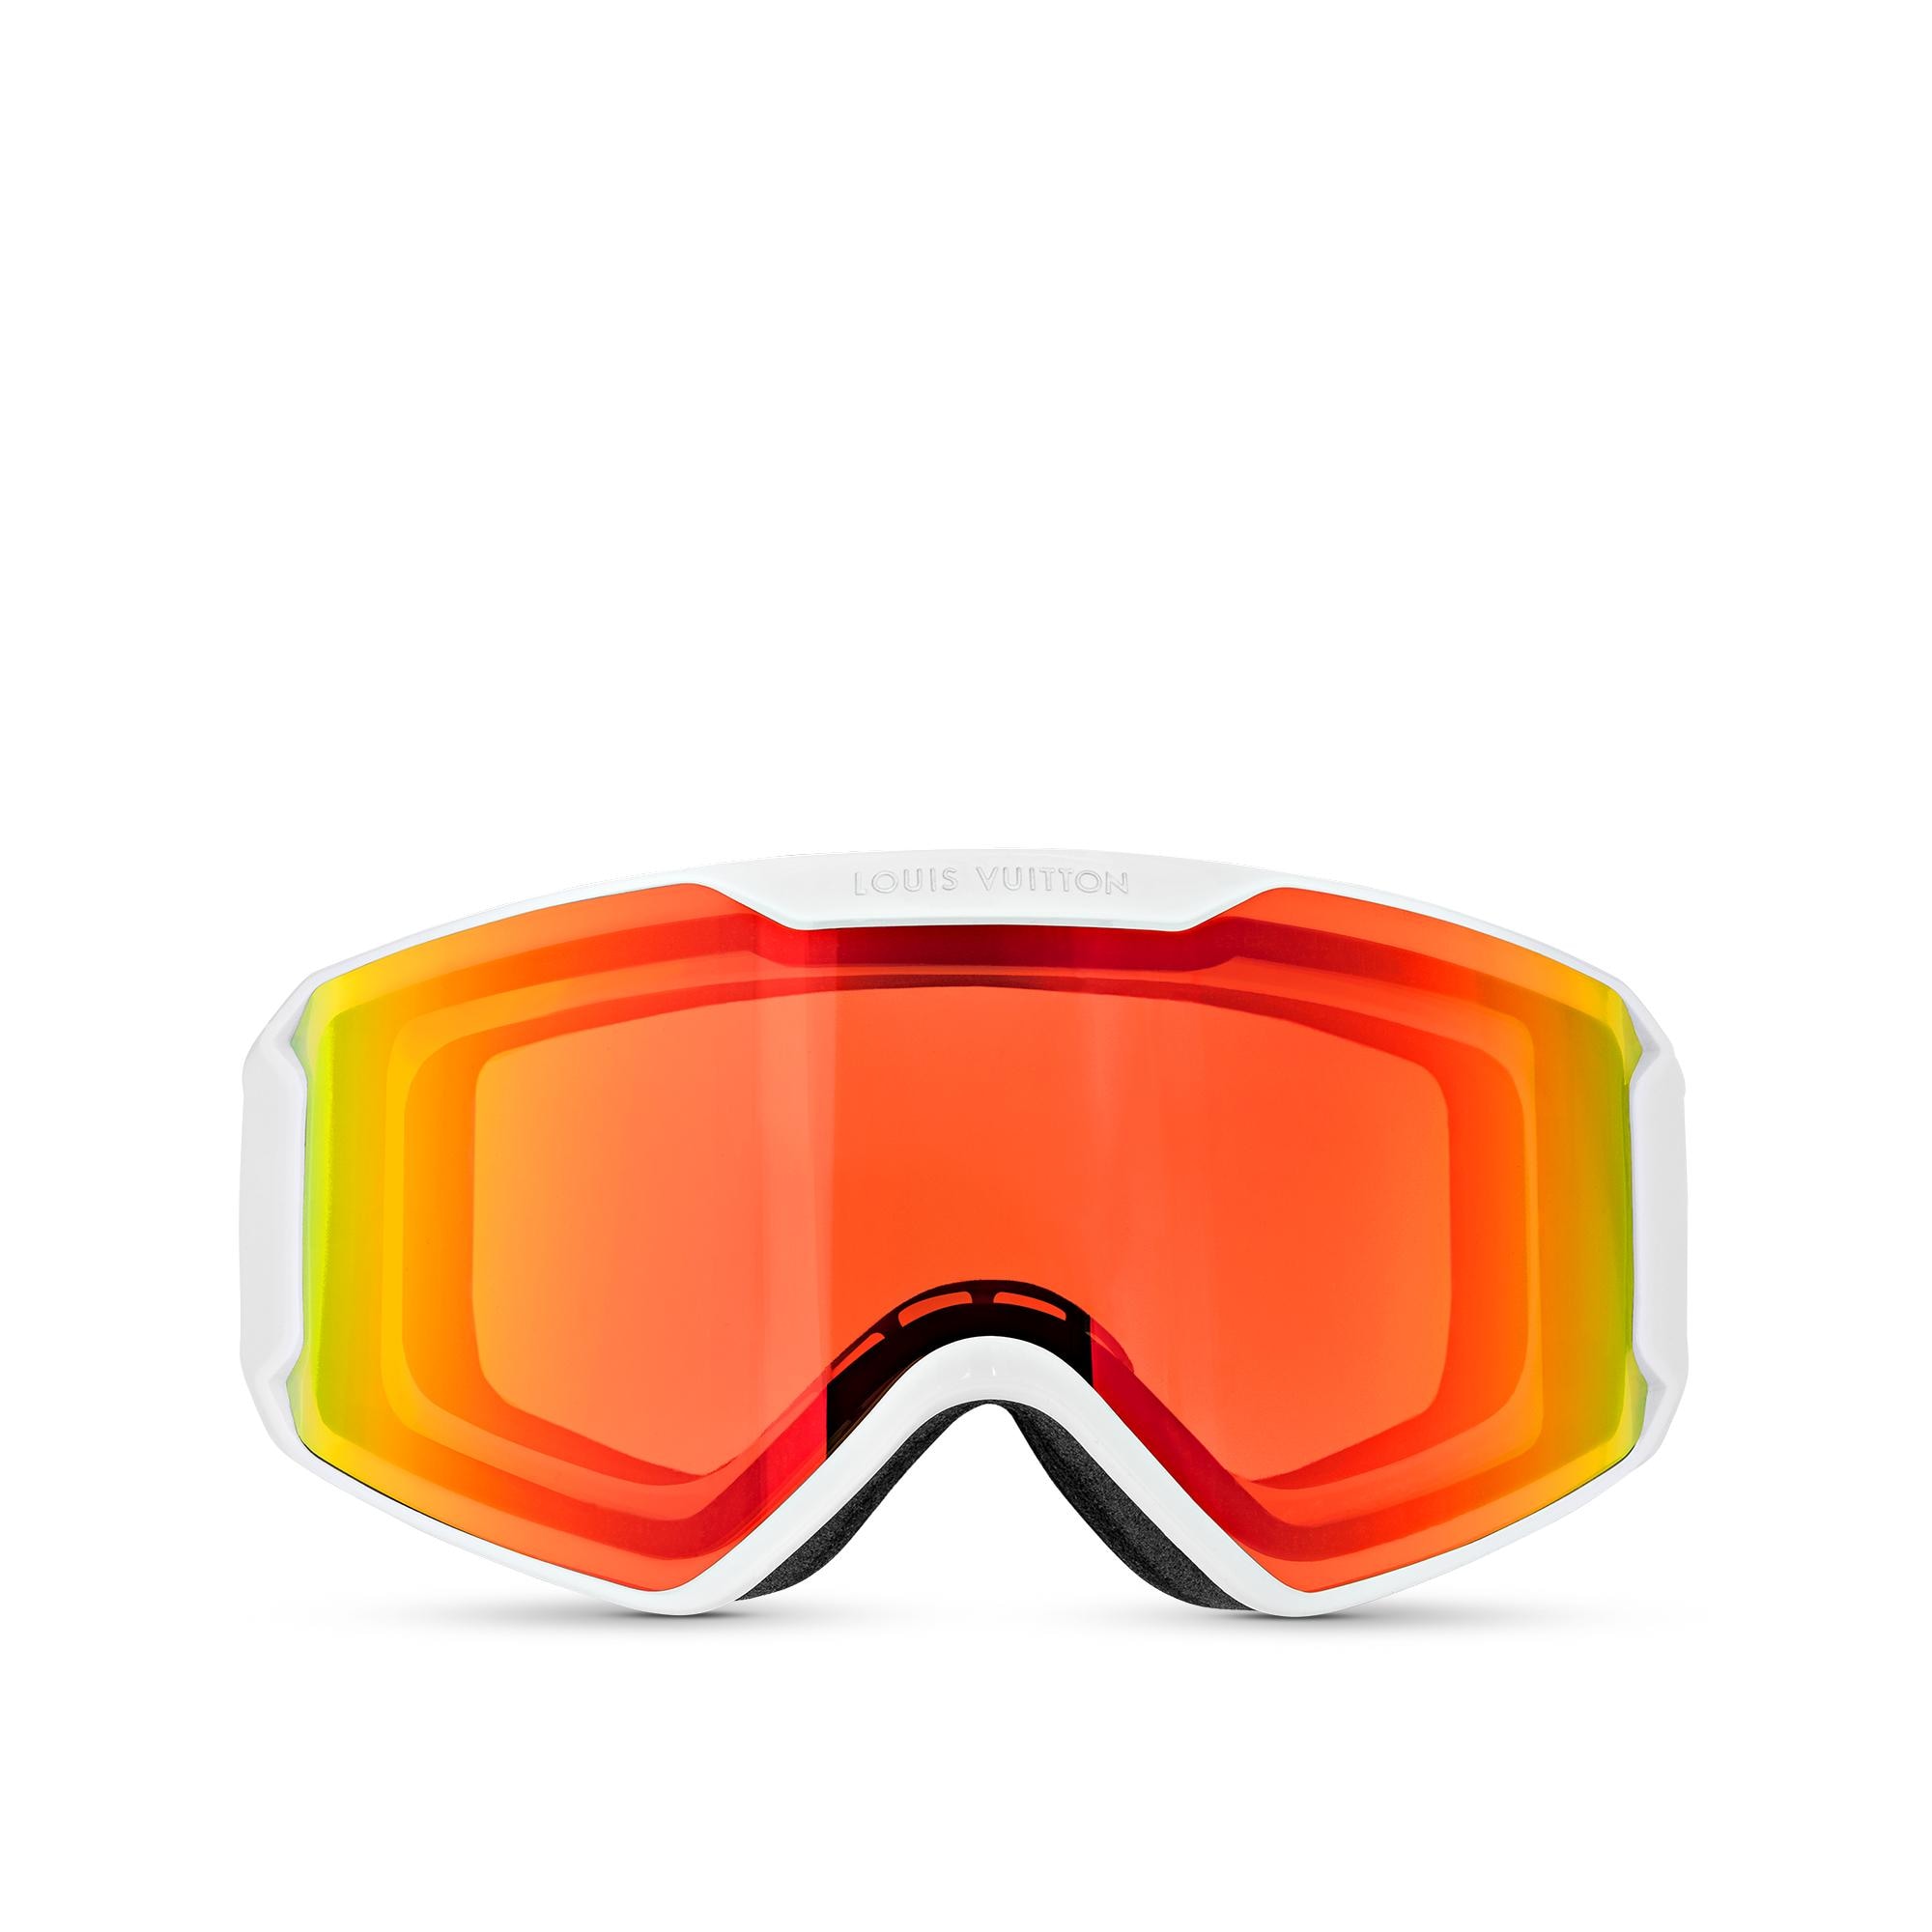 LV Ski Mask – theunivbrand